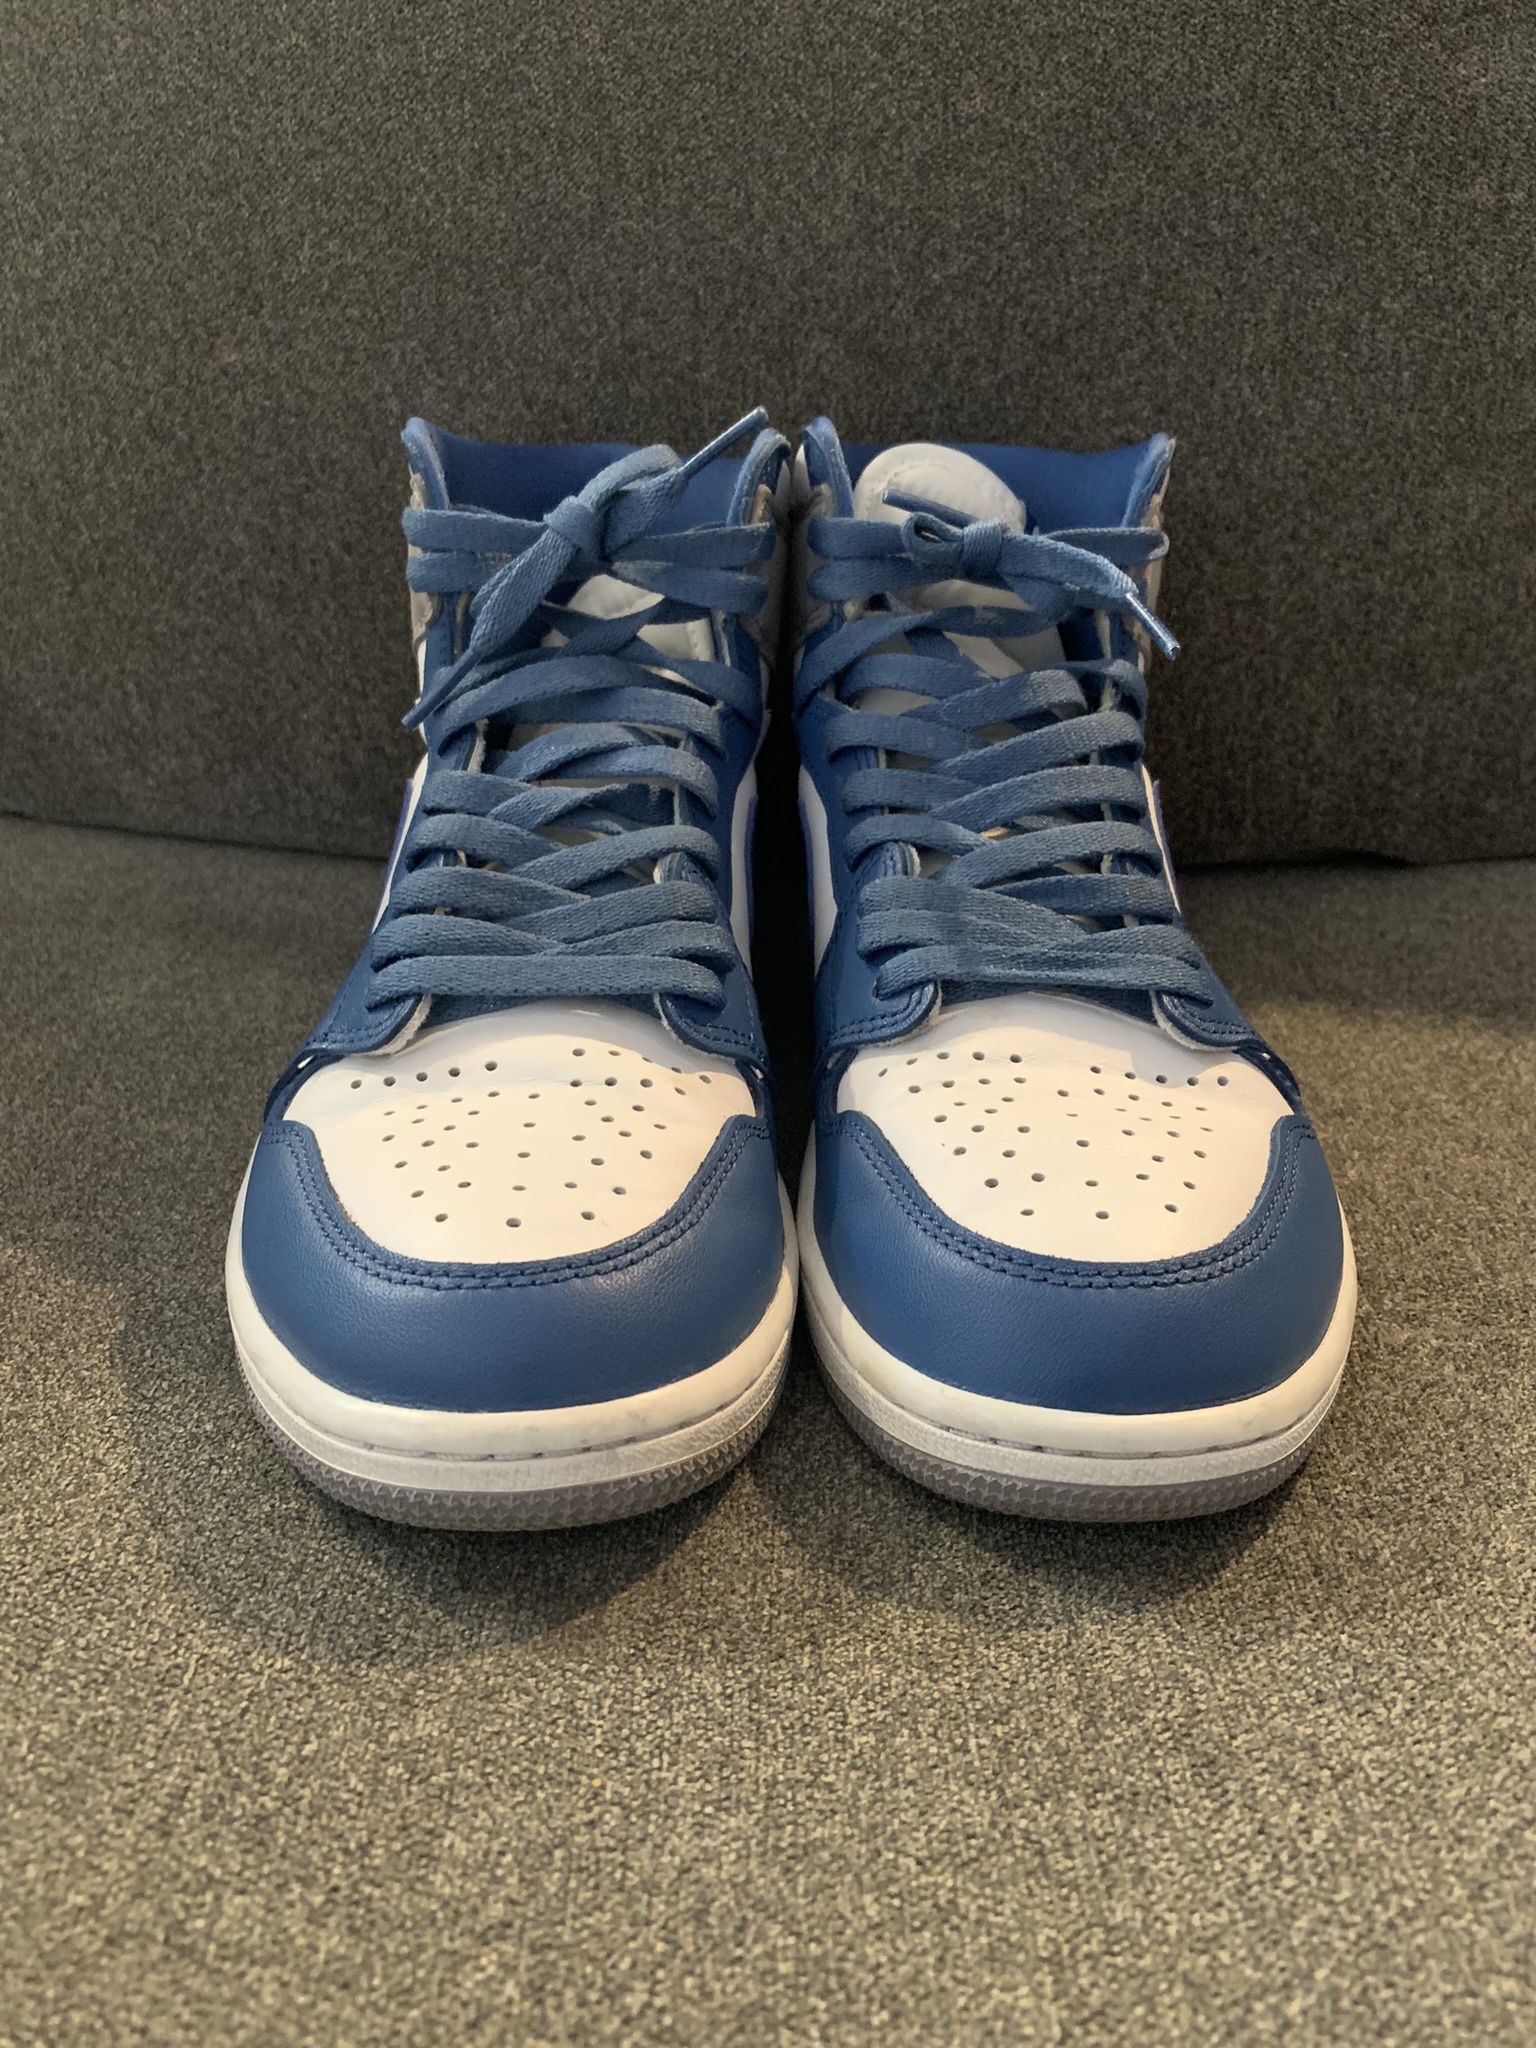 Air Jordan Retro 1 ‘True blue’